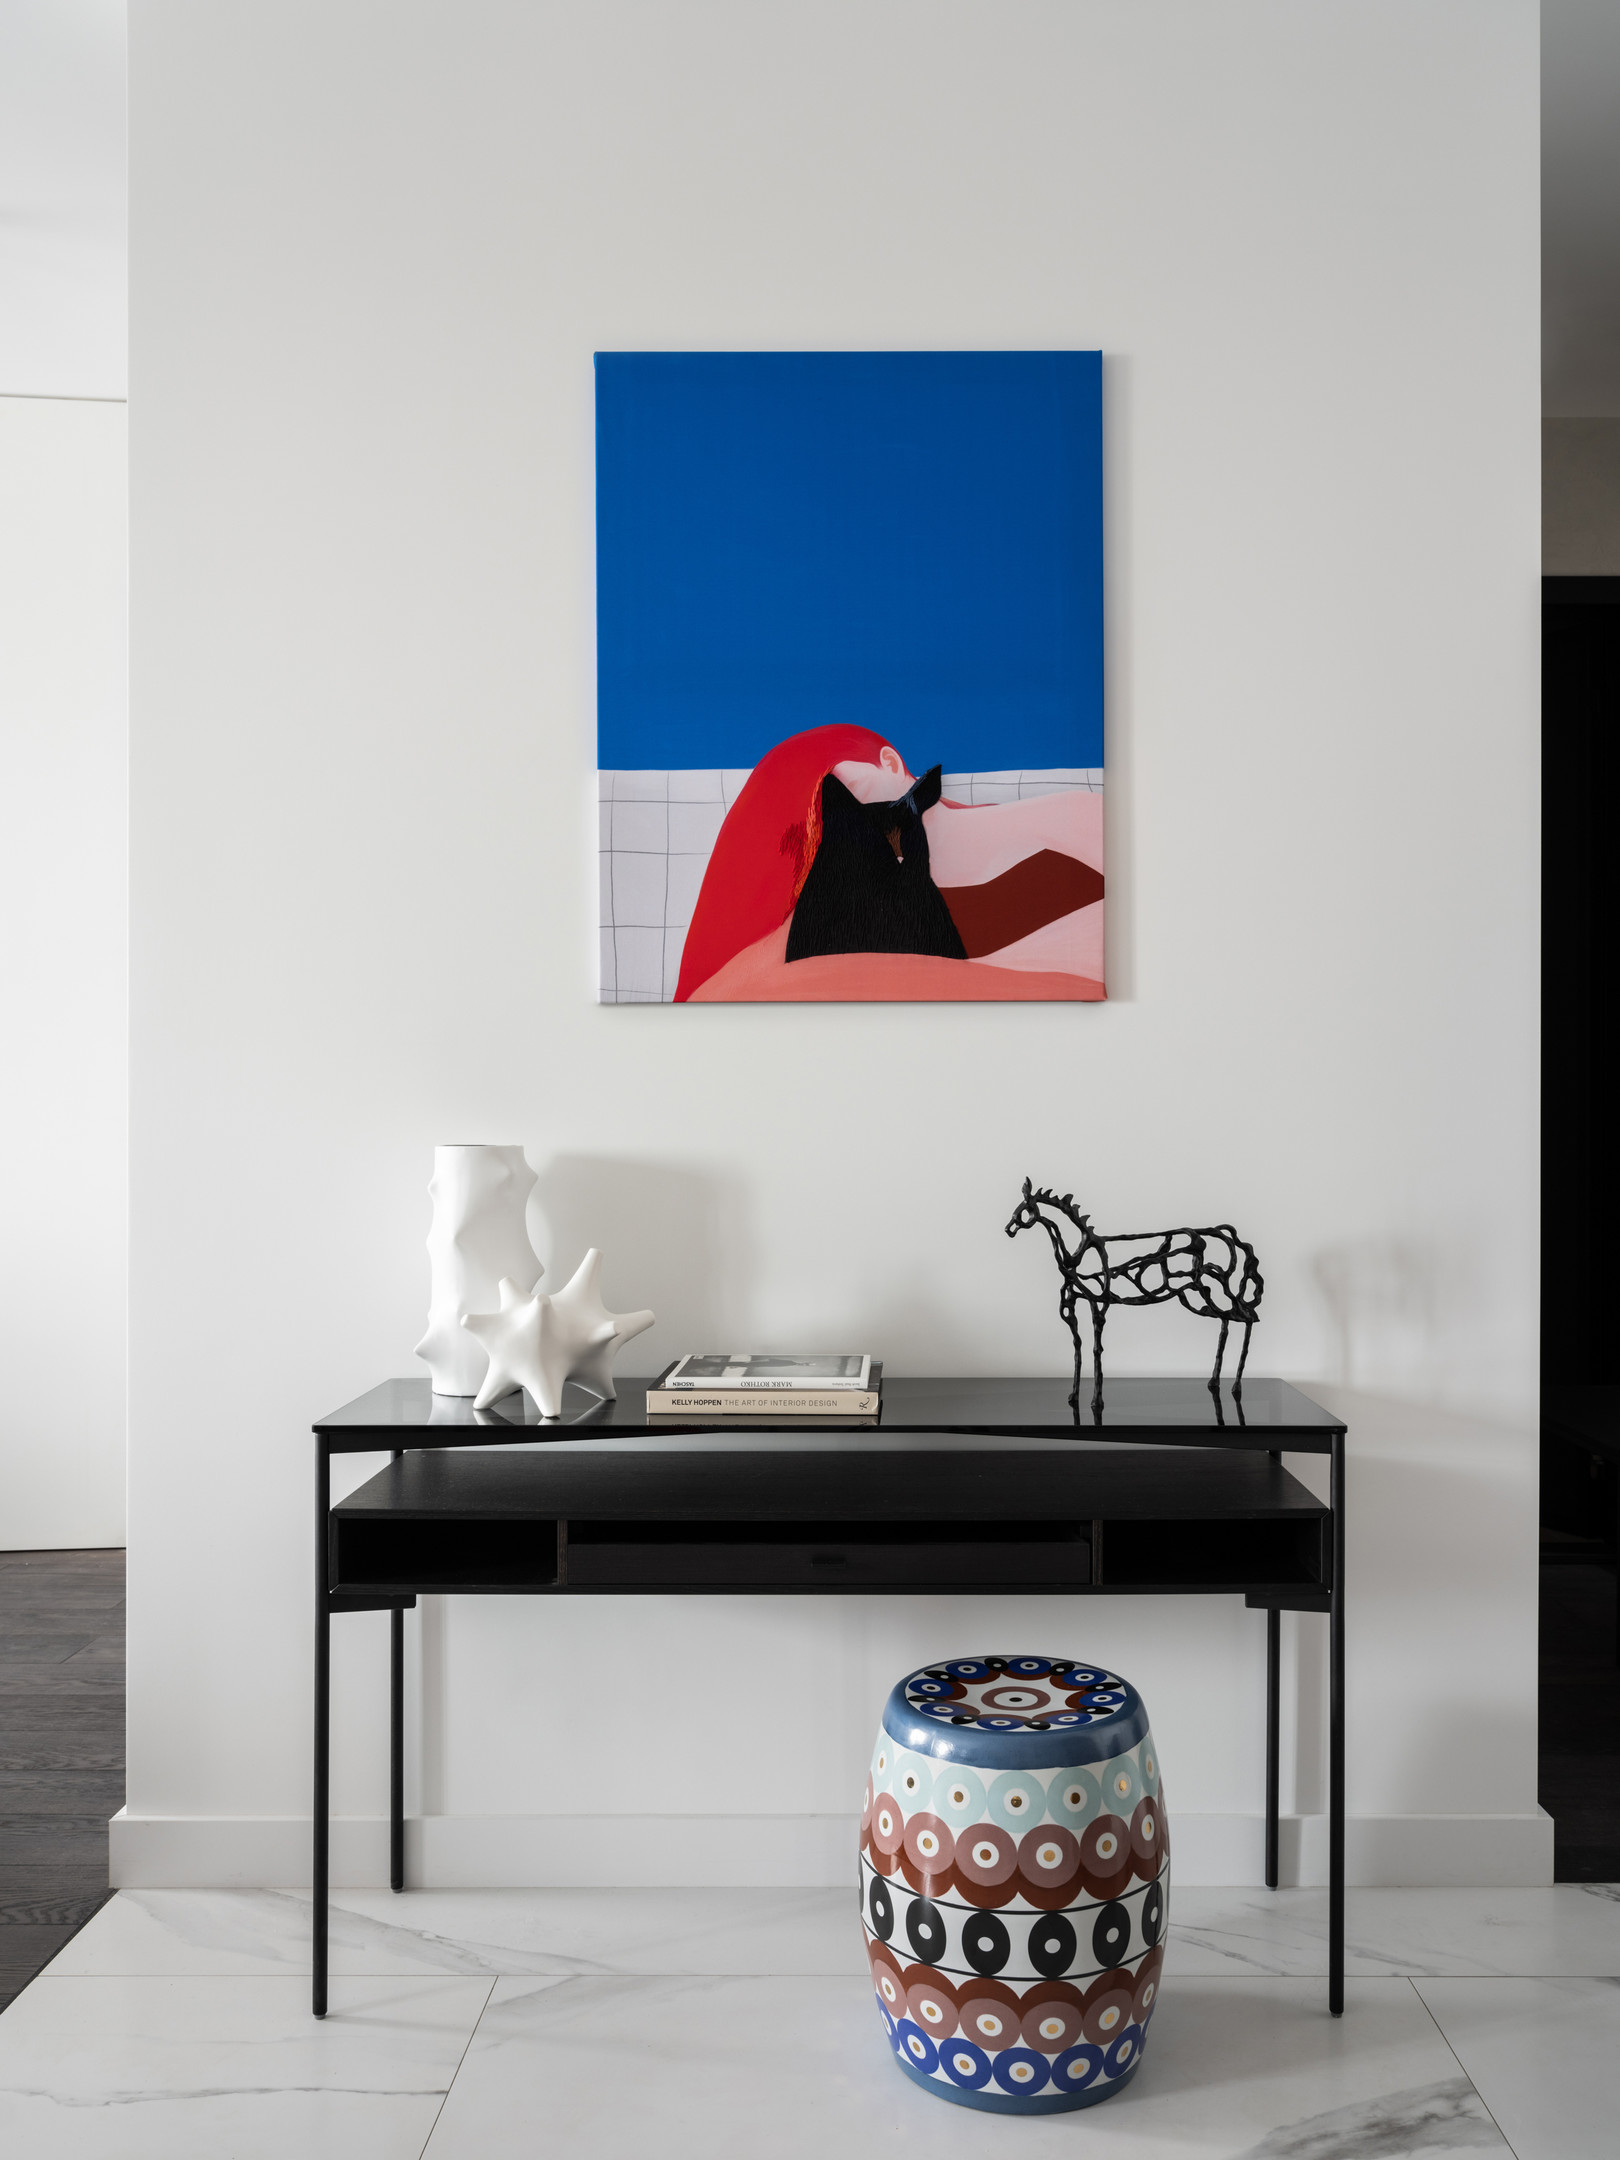 Hành lang lối vào căn hộ được bố trí một chiếc bàn màu đen để trưng bày sách và phụ kiện, nổi bật một chiếc ghế đôn như chiếc trống nhiều màu nổi bật. Trên tường là bức tranh cô gái và chú mèo đen của họa sĩ Sasha Fortova.